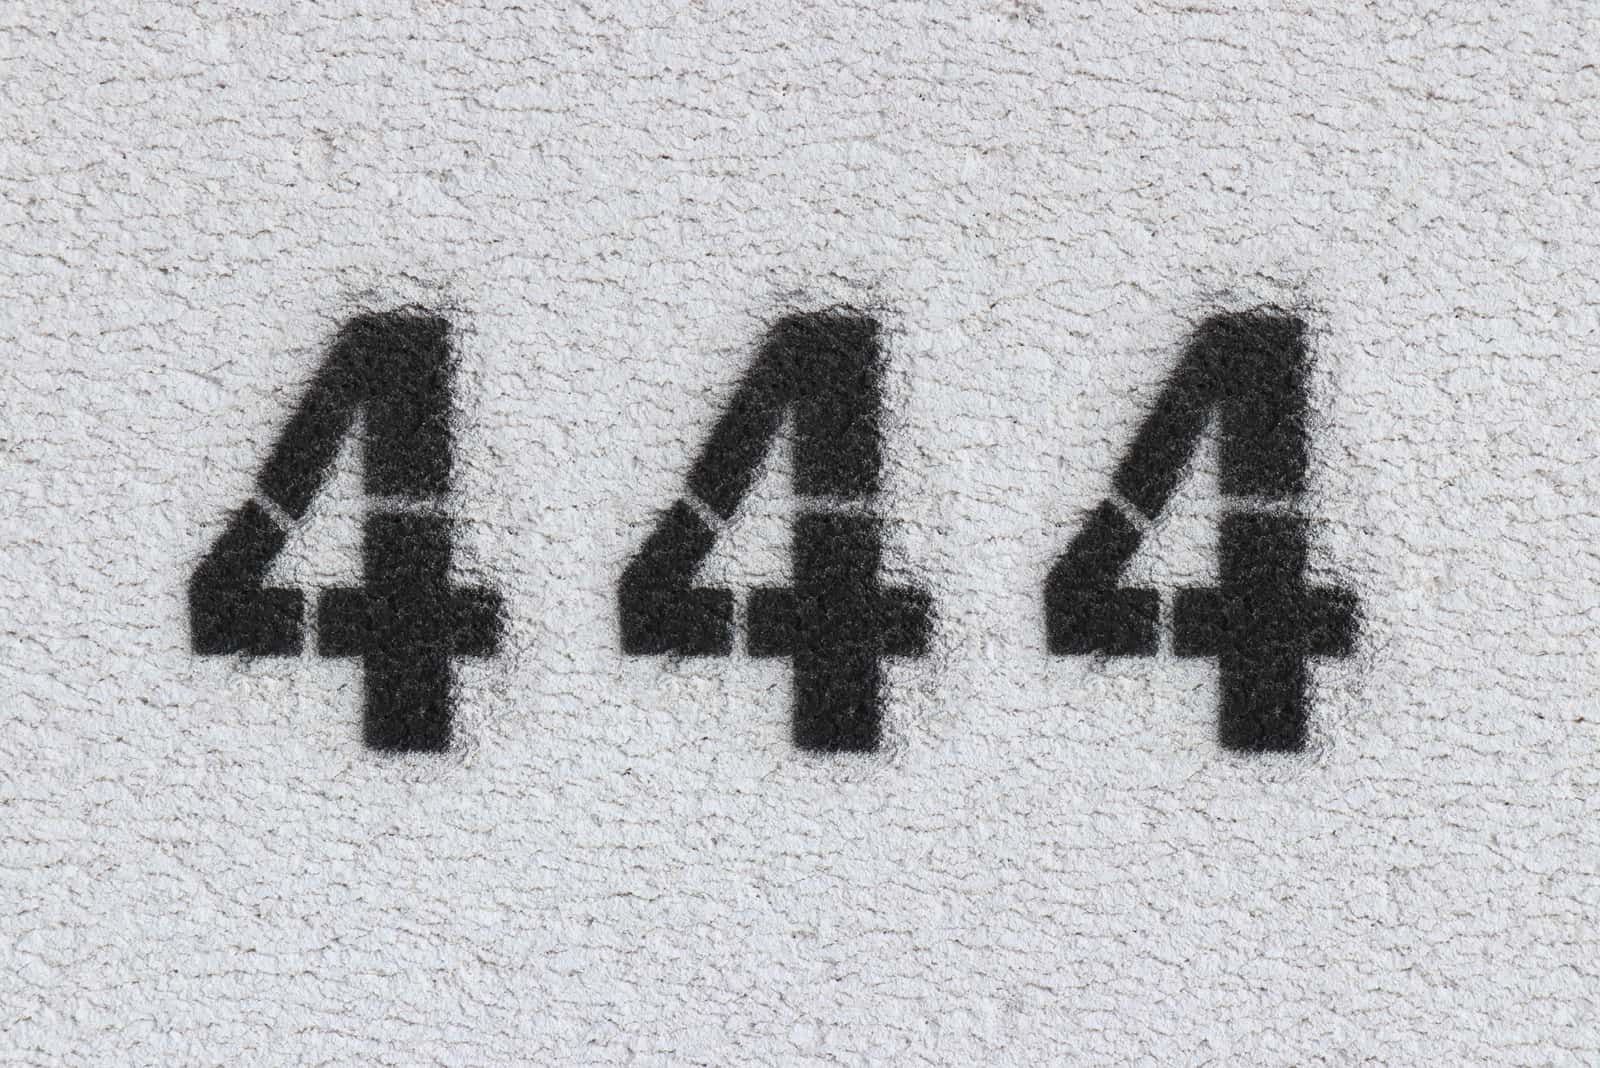 numéro 444 inscrit sur le mur